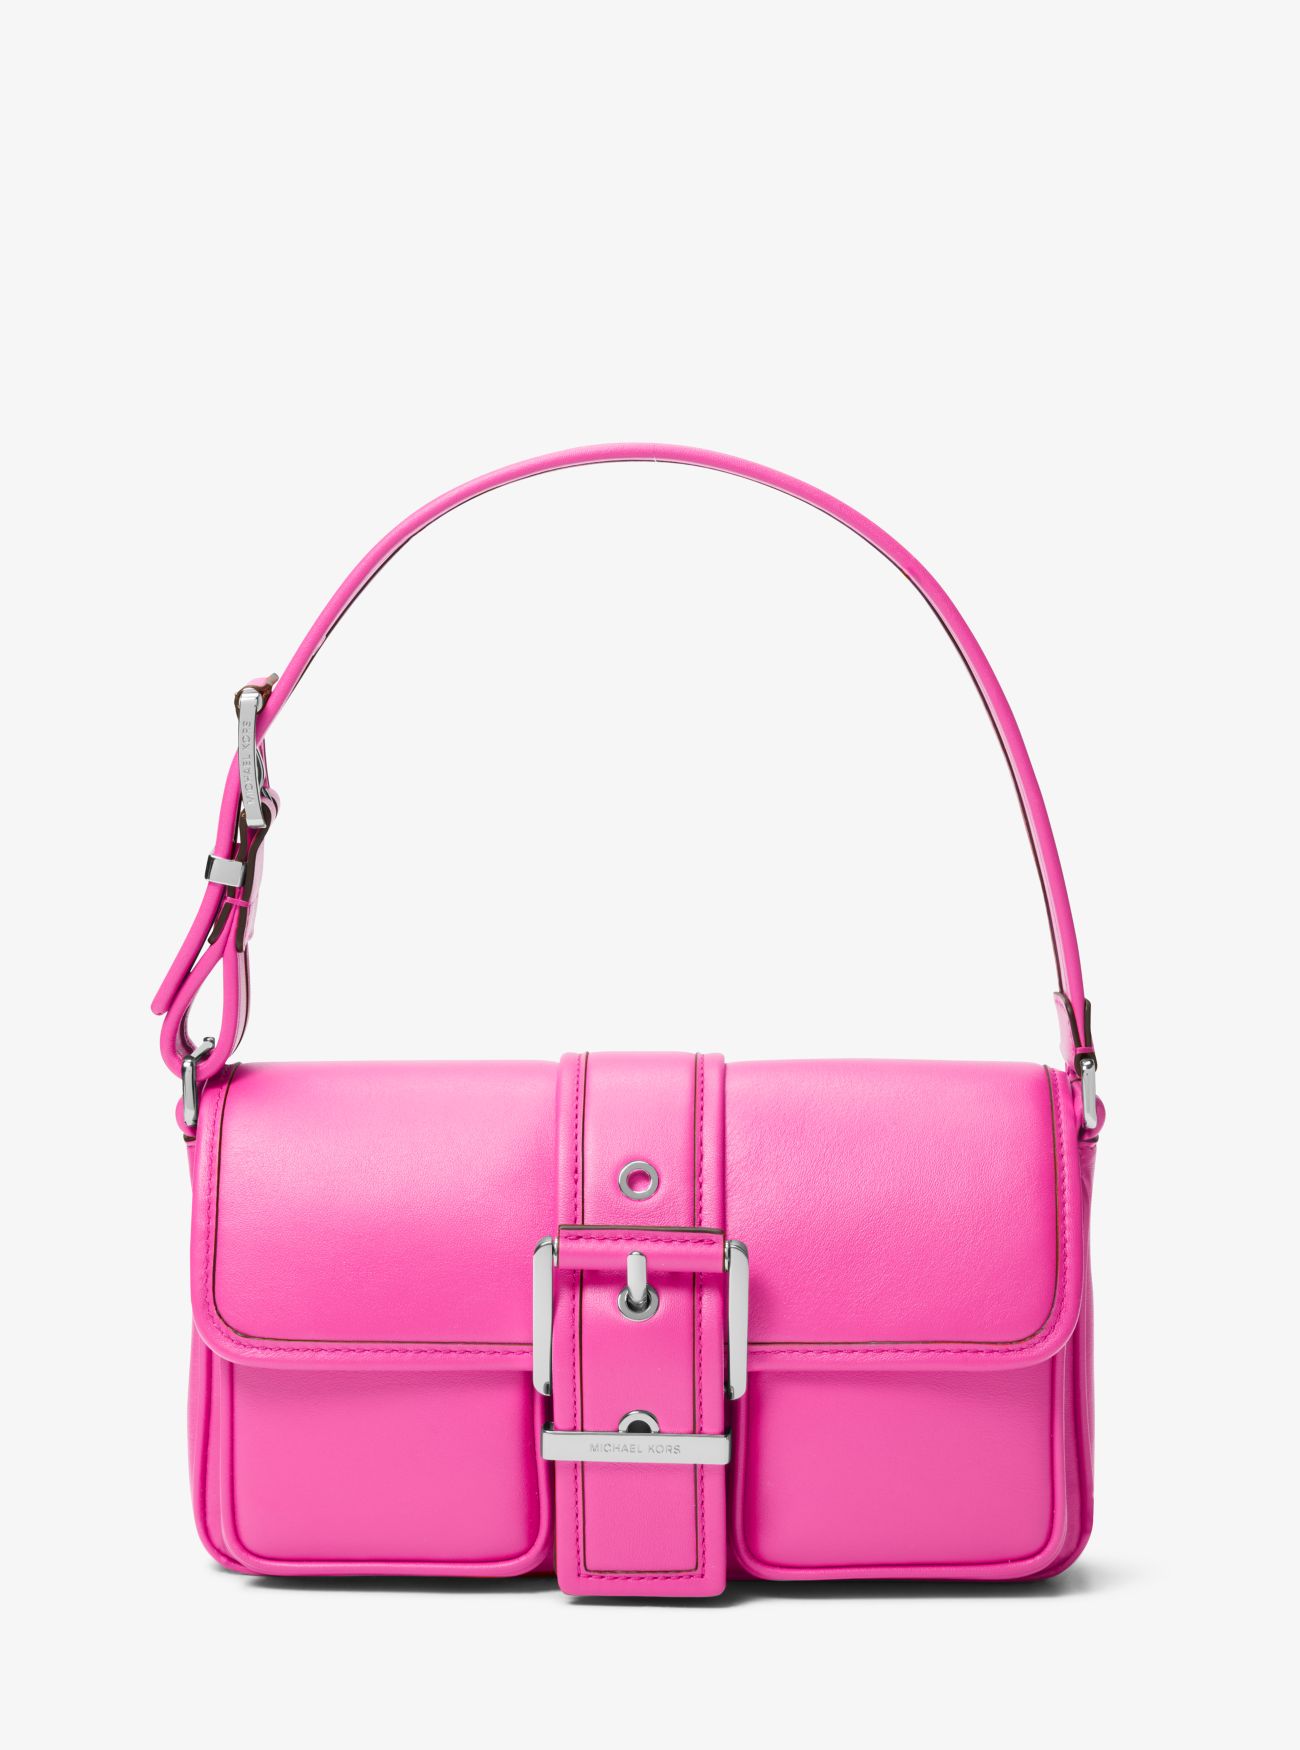 MK Colby Medium Leather Shoulder Bag - Pink - Michael Kors